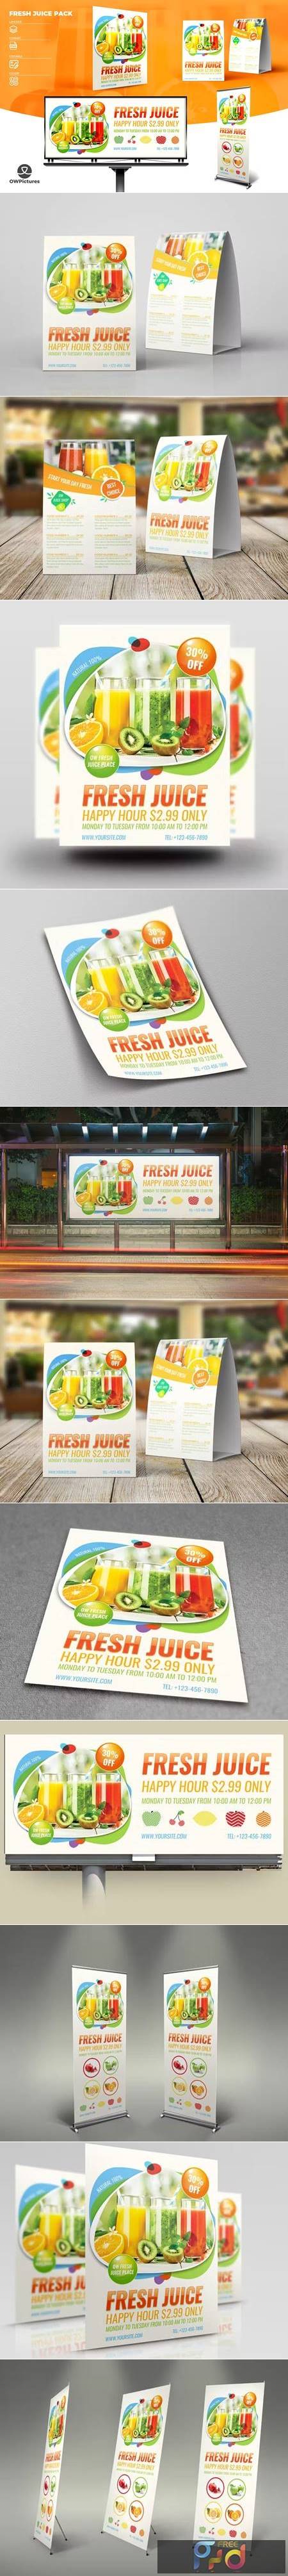 Fresh Juice Advertising Pack 3YWTGWL 1